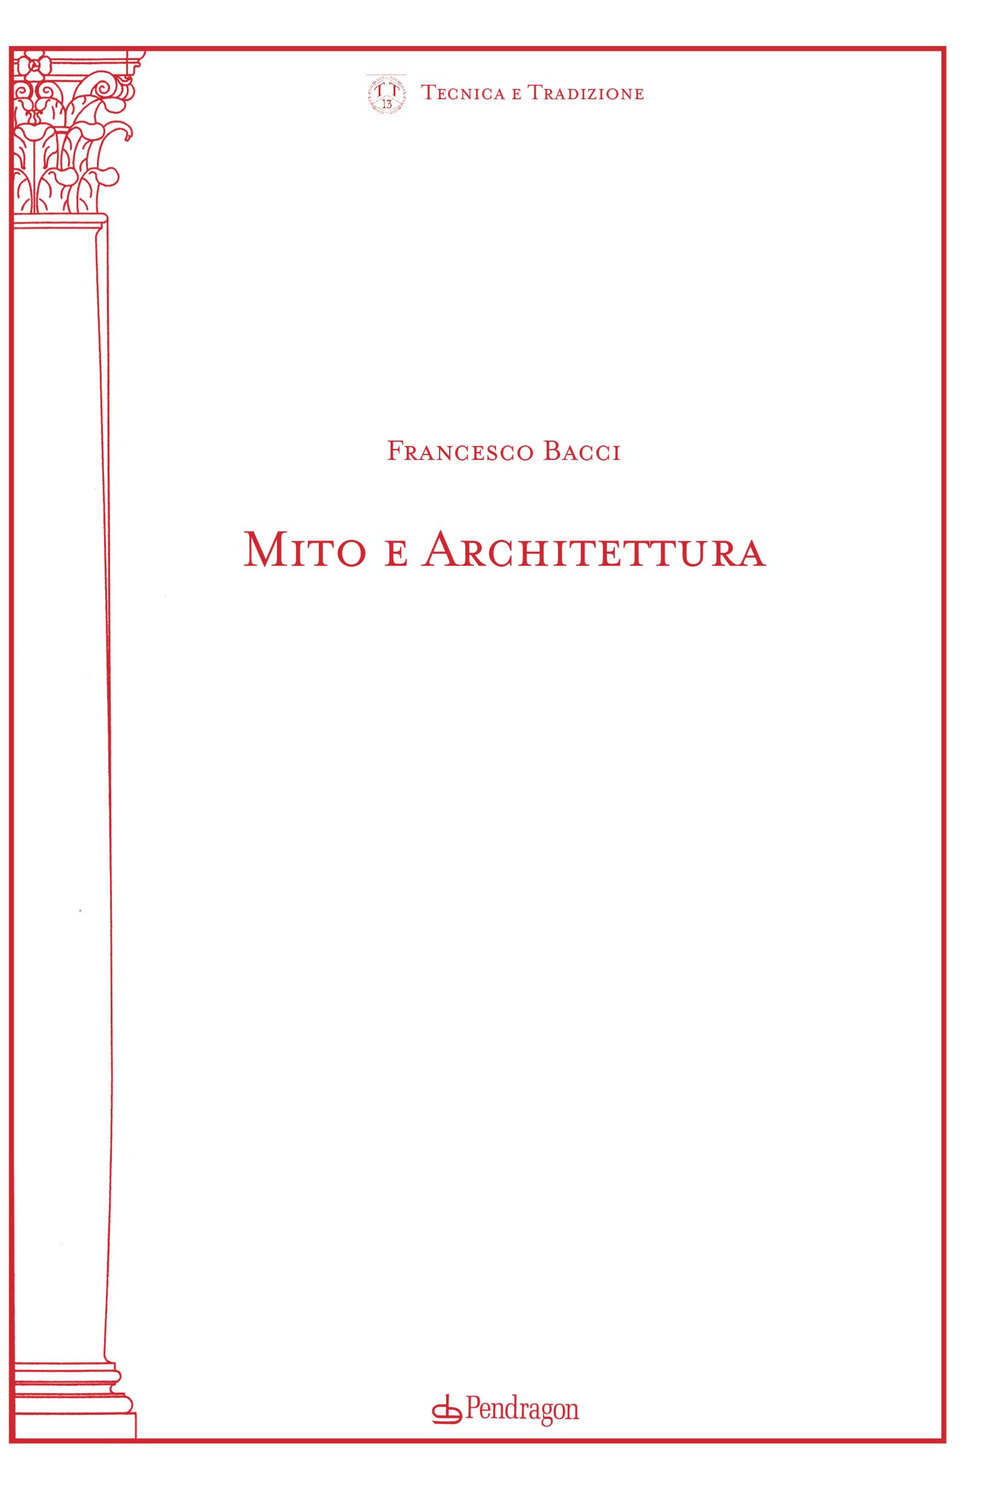 Image of Mito e architettura